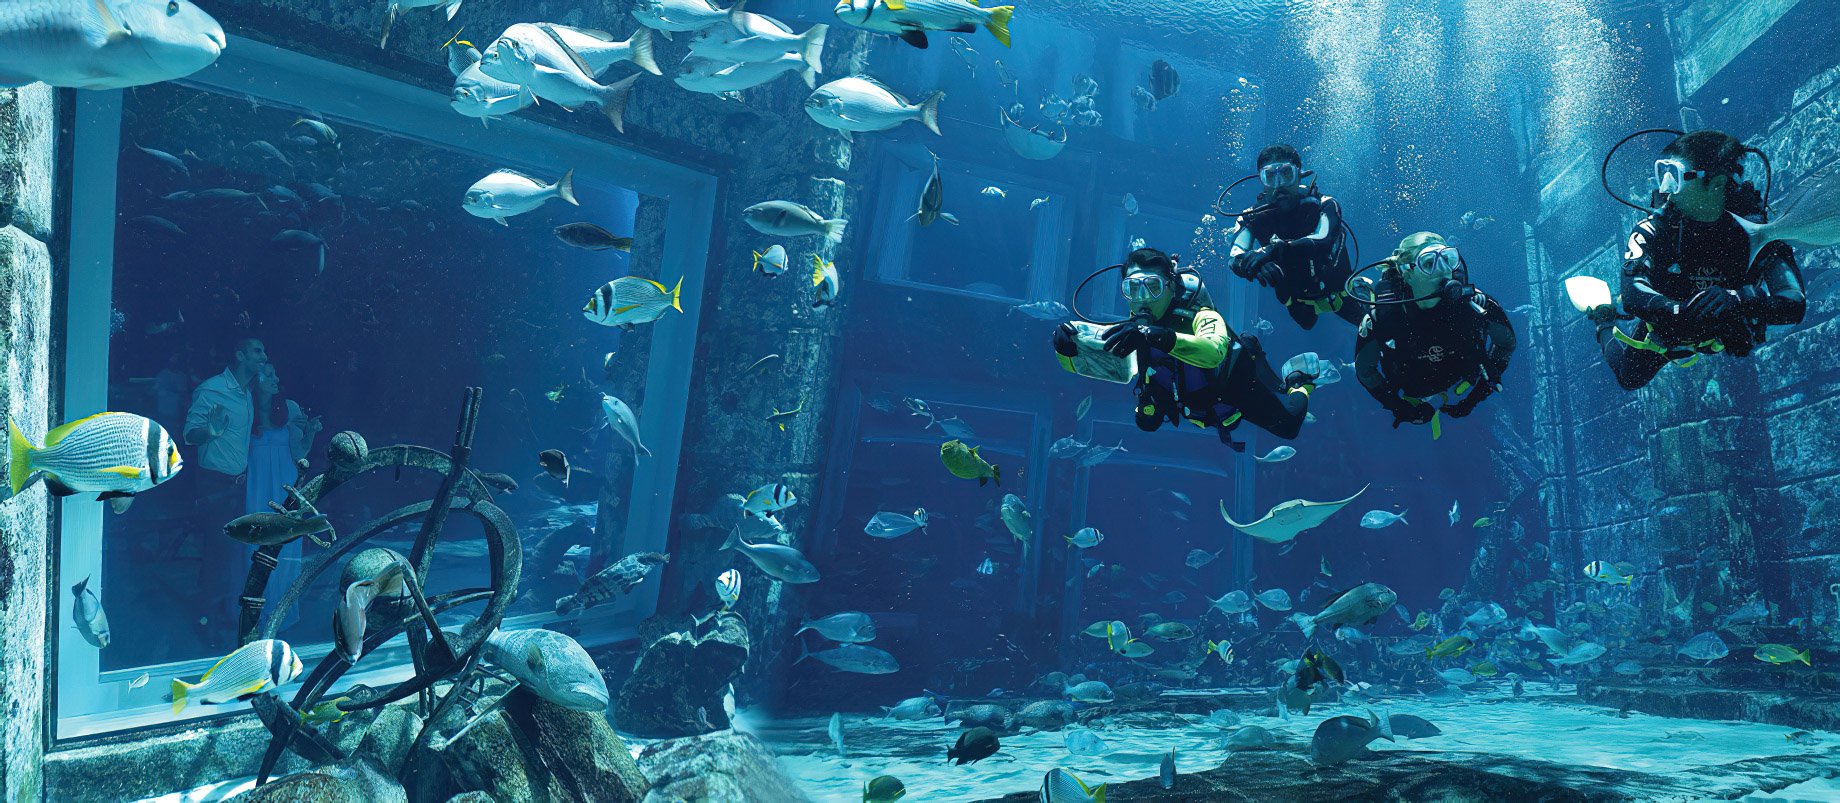 Atlantis The Palm Resort – Crescent Rd, Dubai, UAE – Dive Discovery